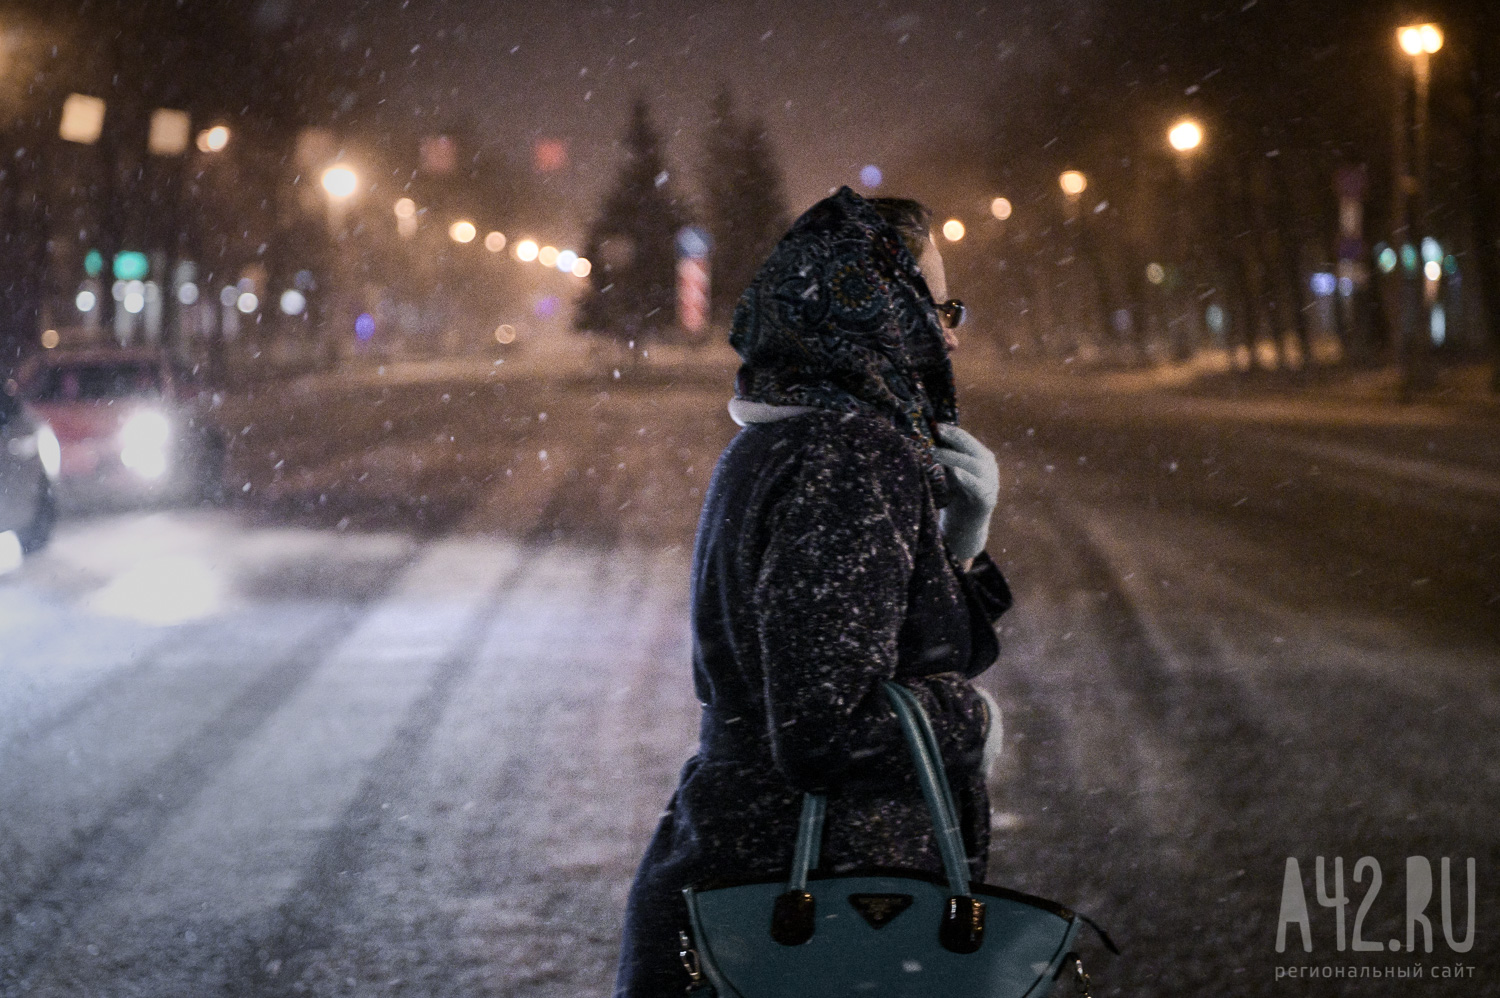 Синоптики предупредили о штормовом ветре и мокром снеге в Кузбассе